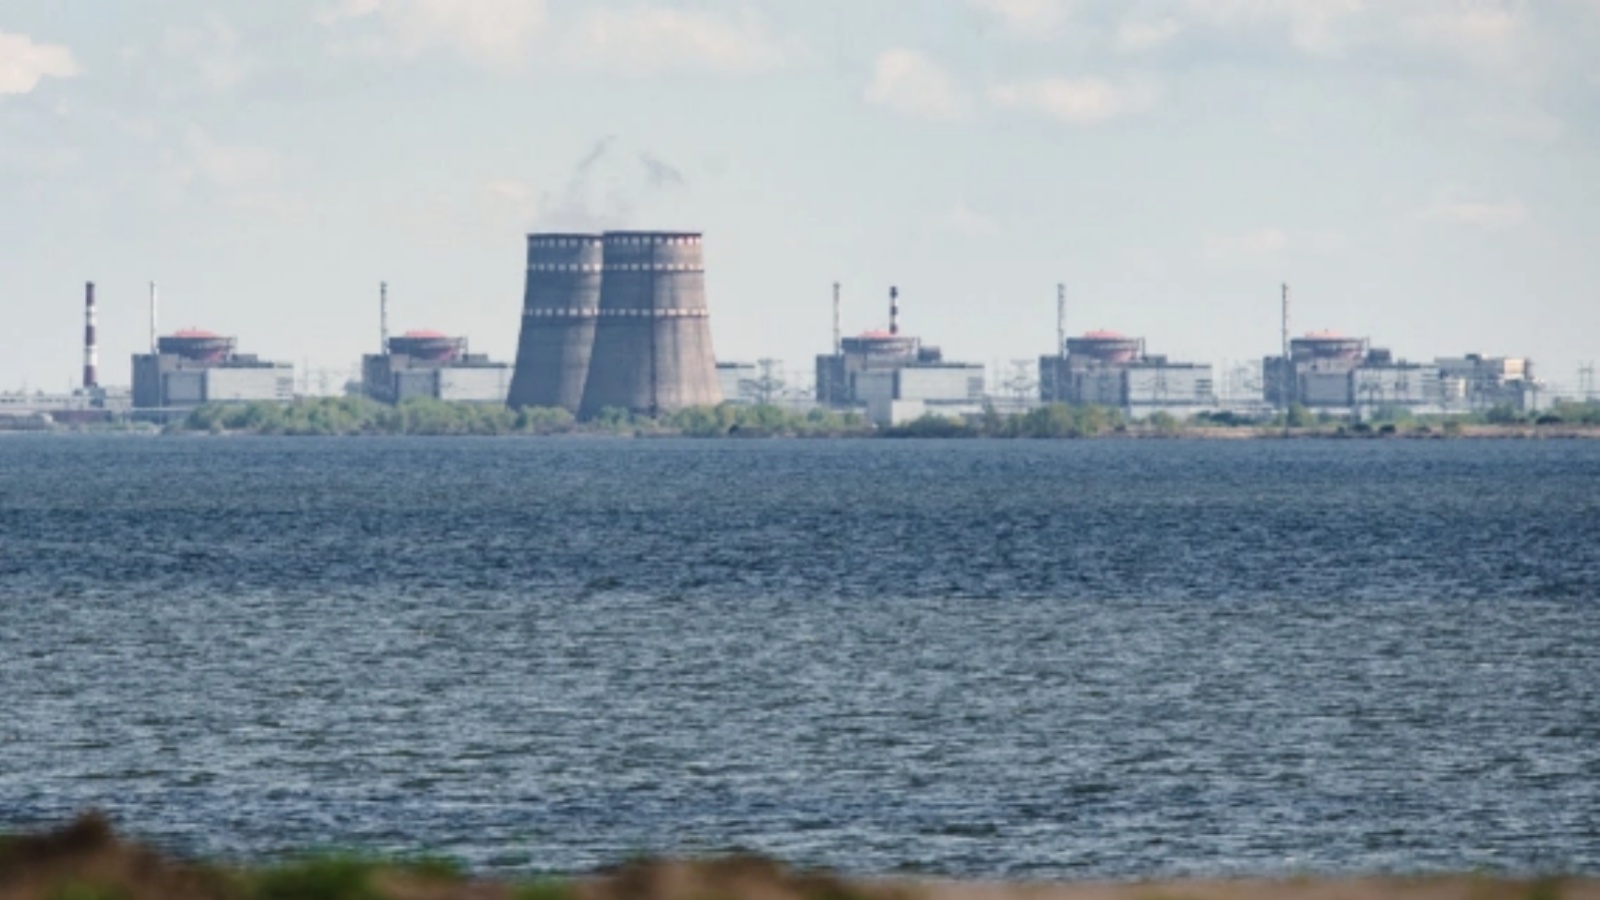 منظر عام يُظهر محطة الطاقة النووية زابوريجيا، الواقعة في منطقة Enerhodar الخاضعة للسيطرة الروسية، والتي شوهدت من نيكوبول، أوكرانيا